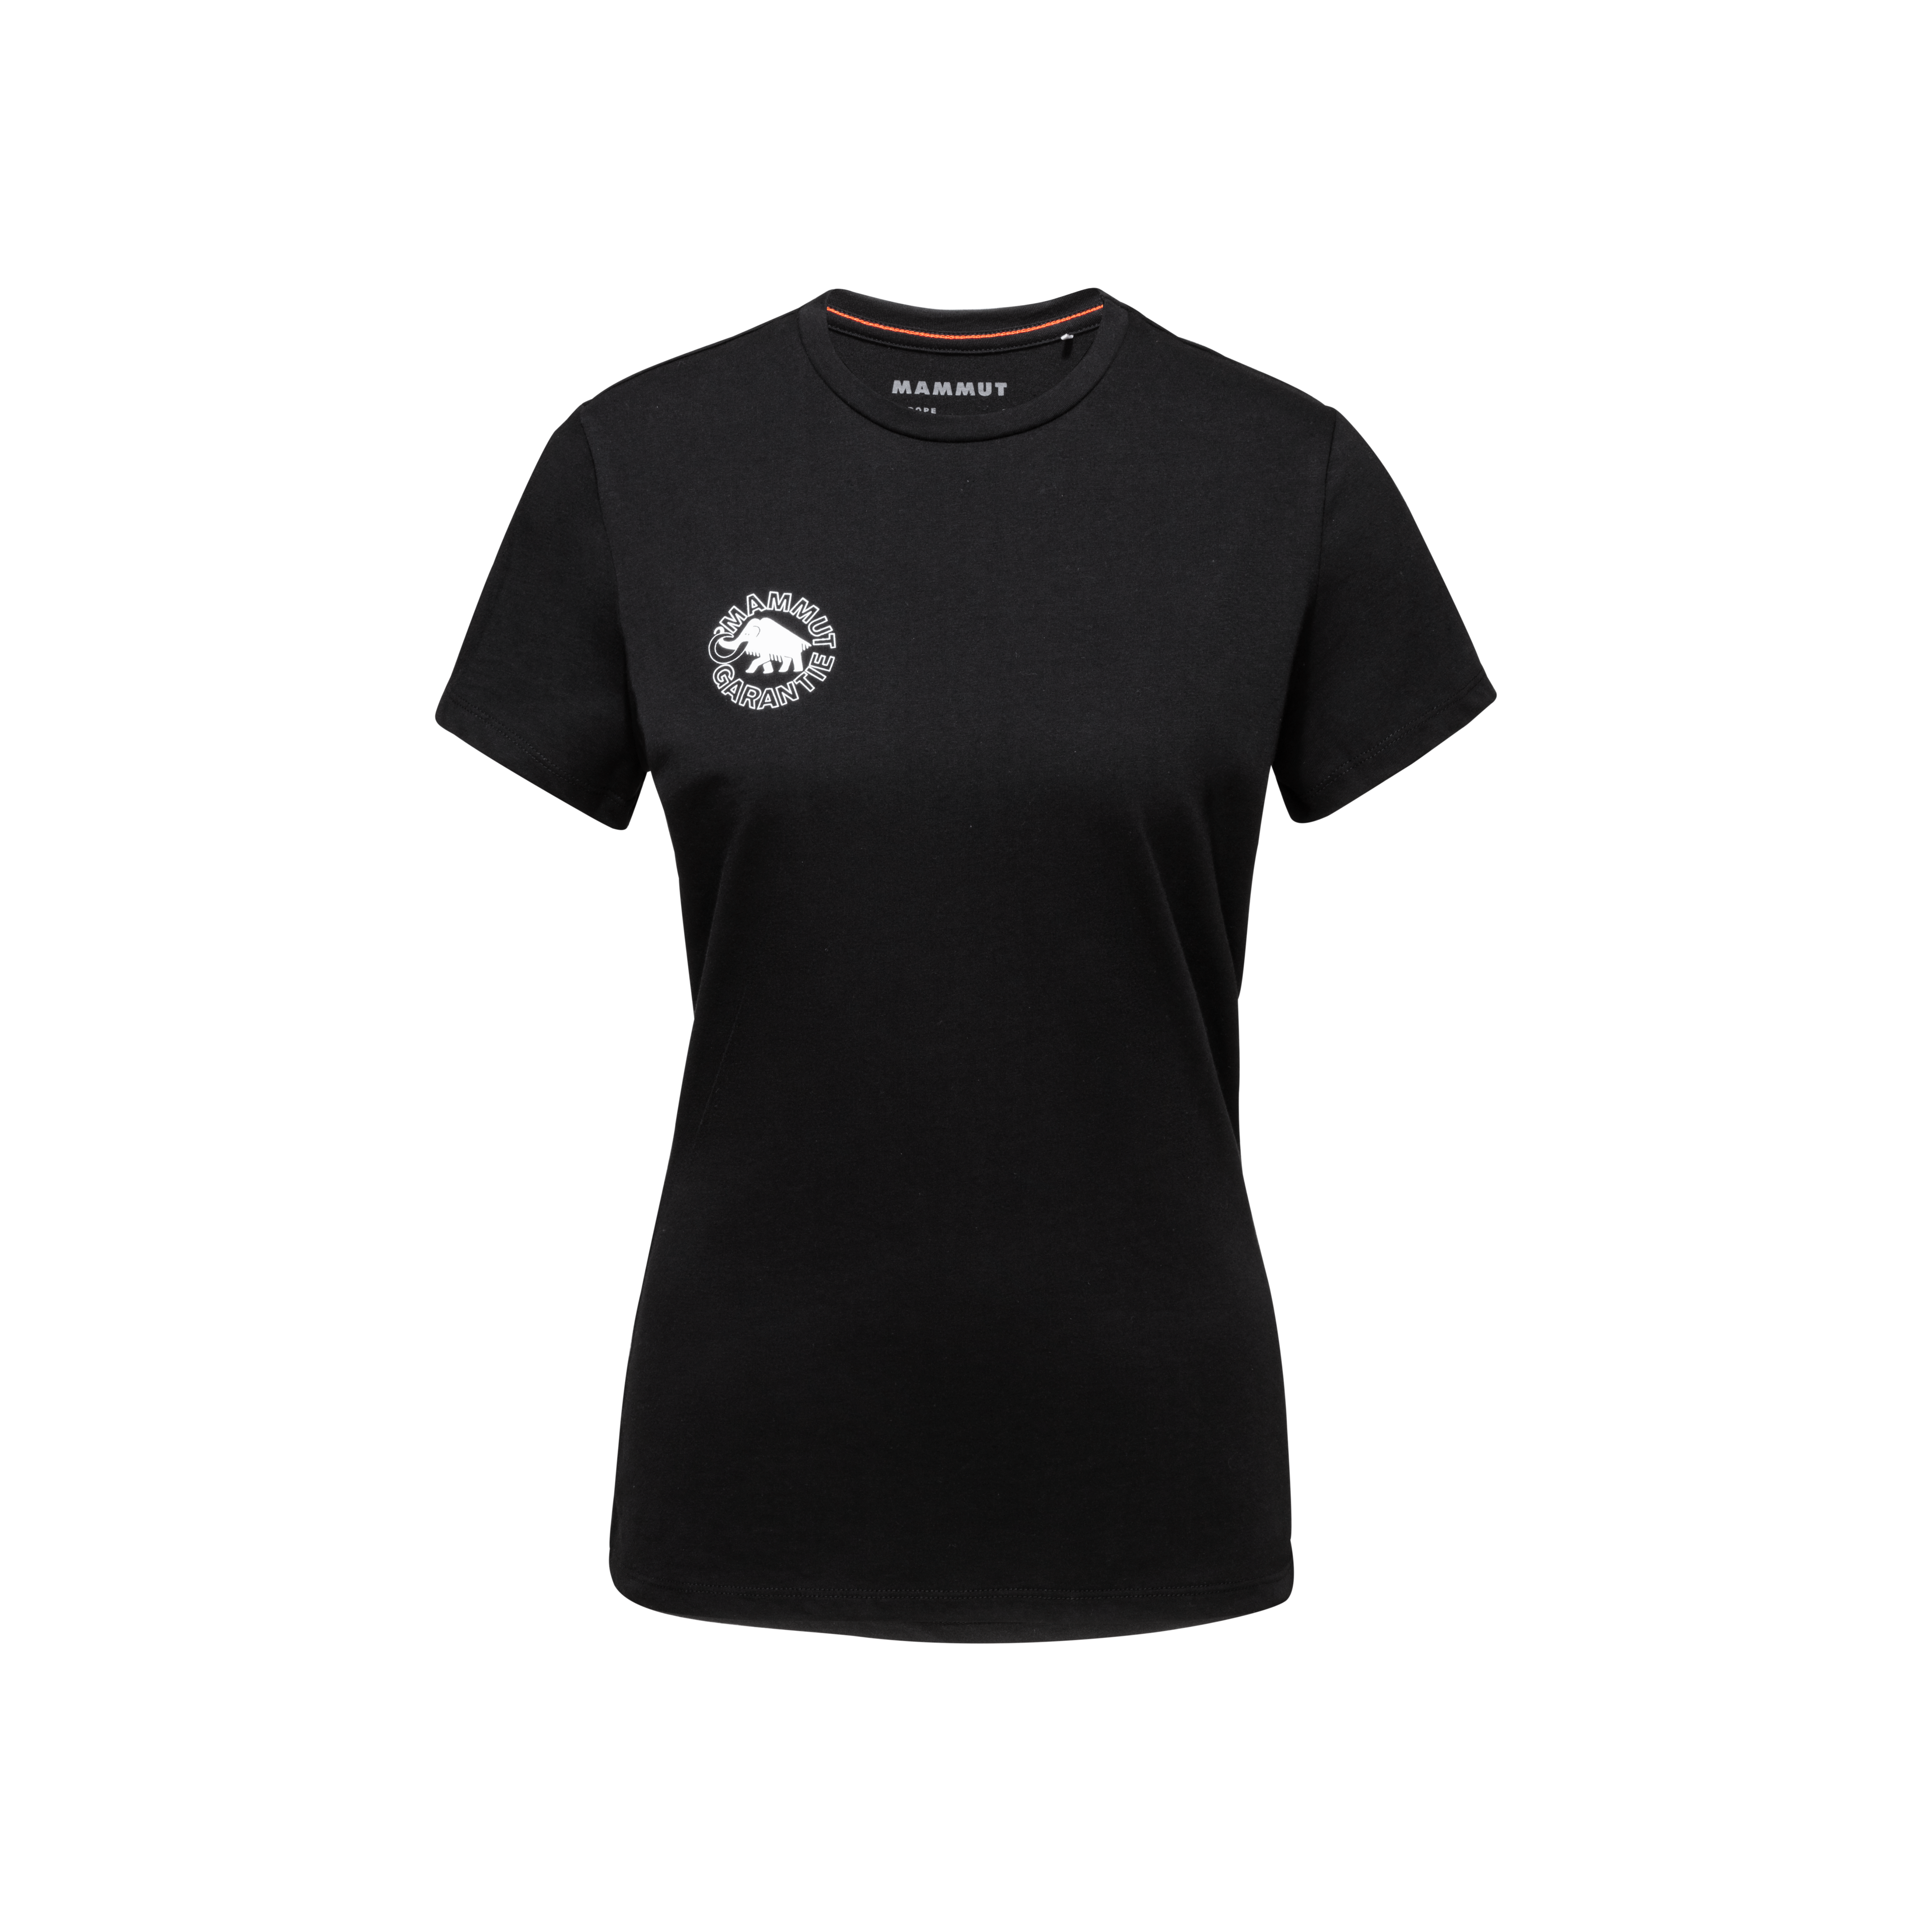 Seile T-Shirt Women Heritage - black, L thumbnail